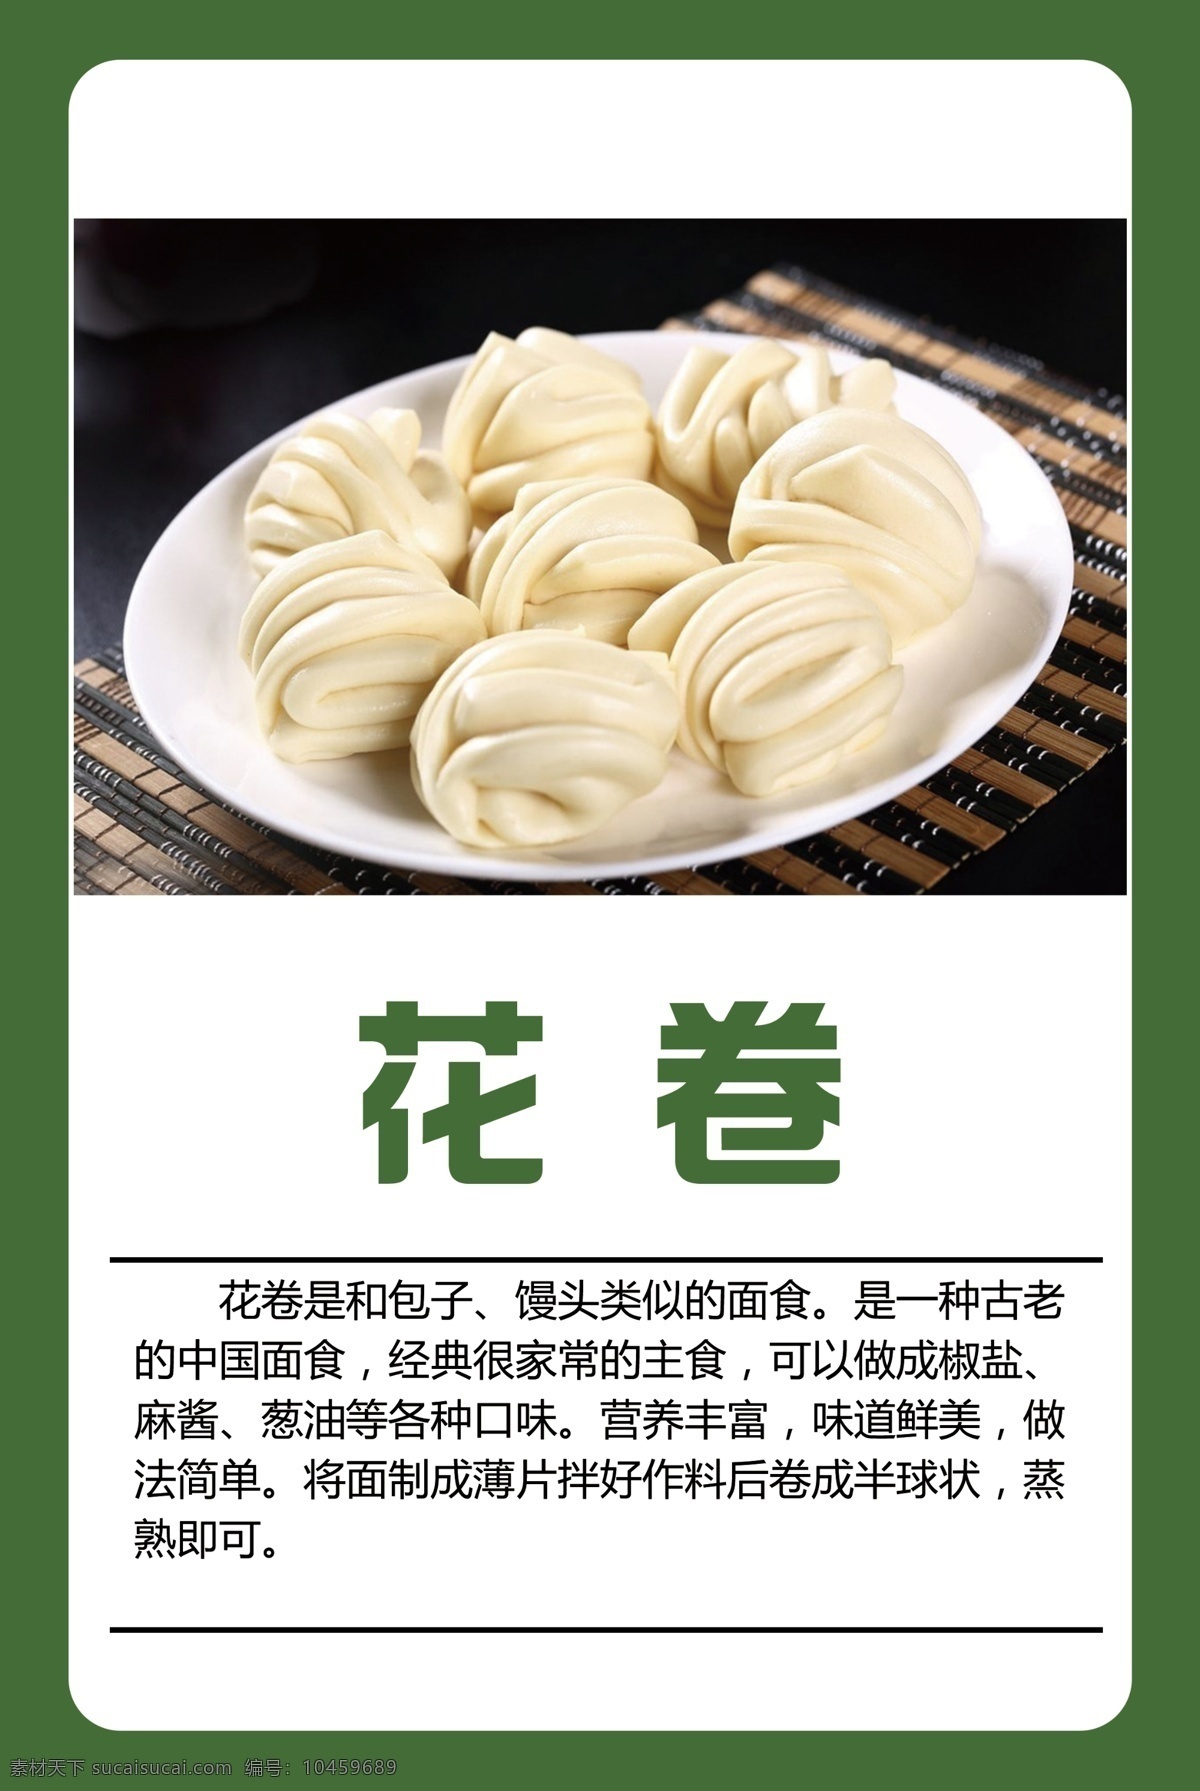 中式烹调花卷 中式 烹调 花卷 制作 方法 分层